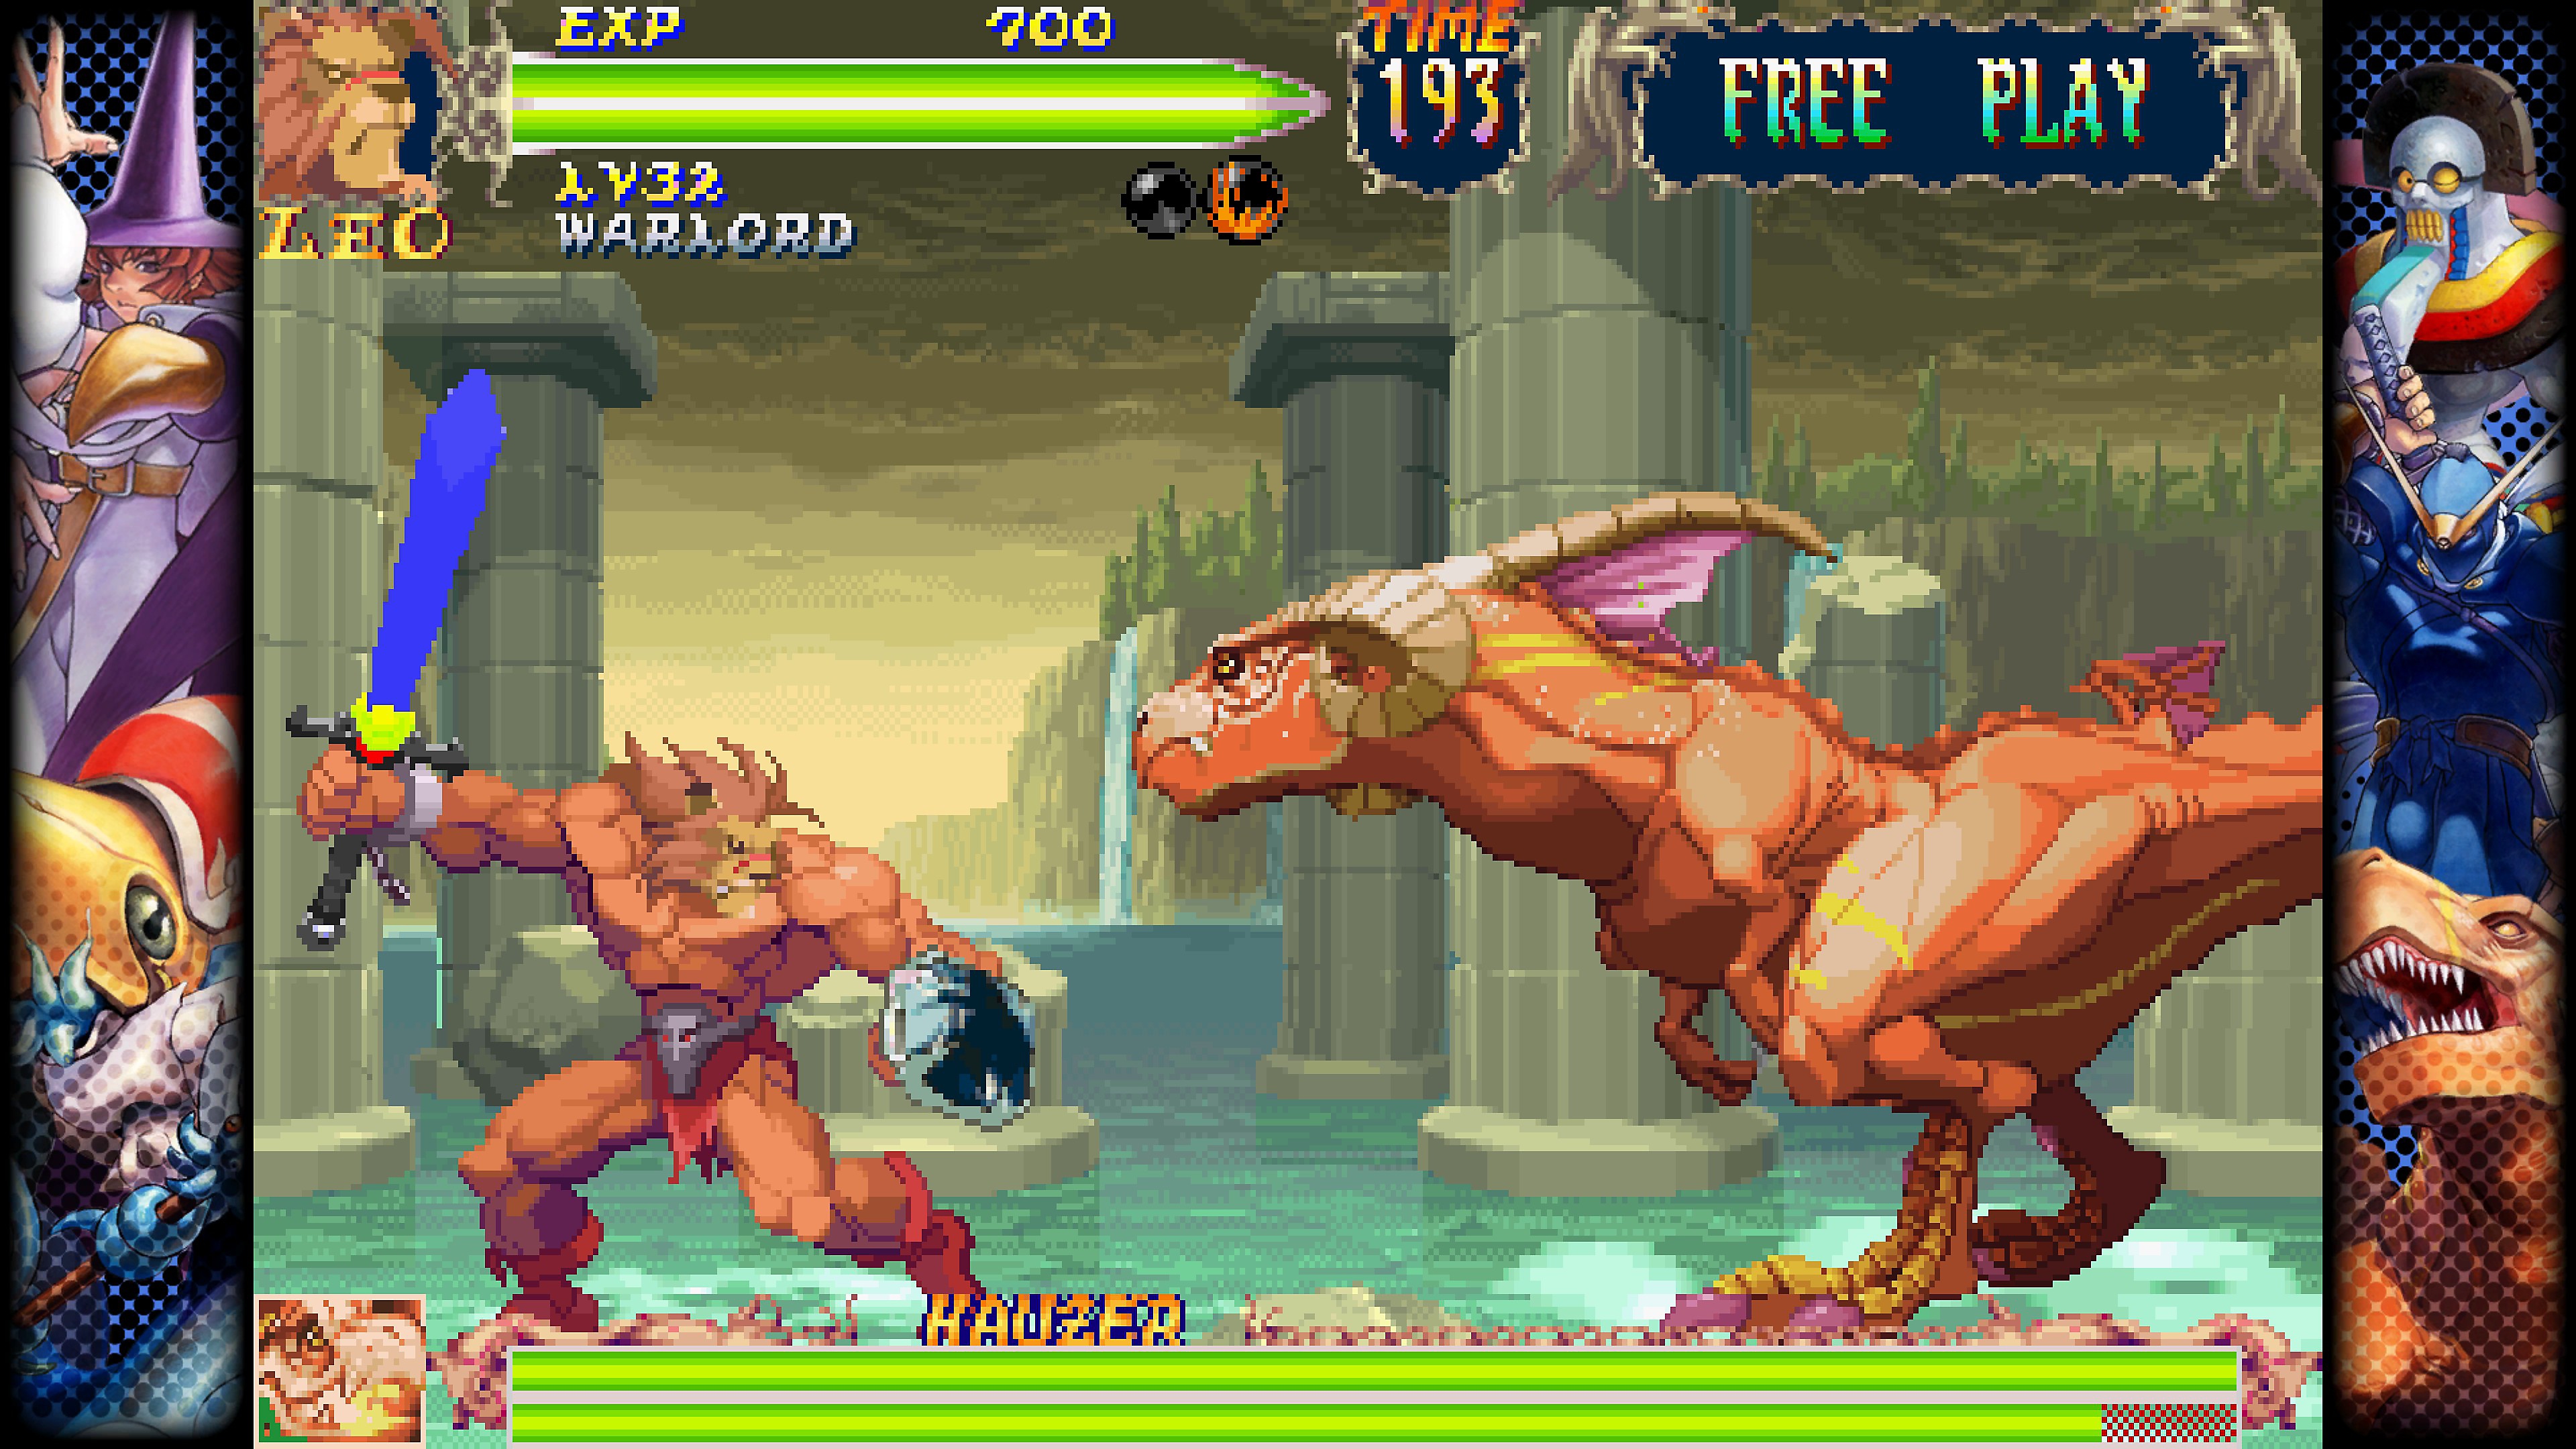 Capcom Fighting Collection – Screenshot von einem Kampf zwischen zwei Charakteren